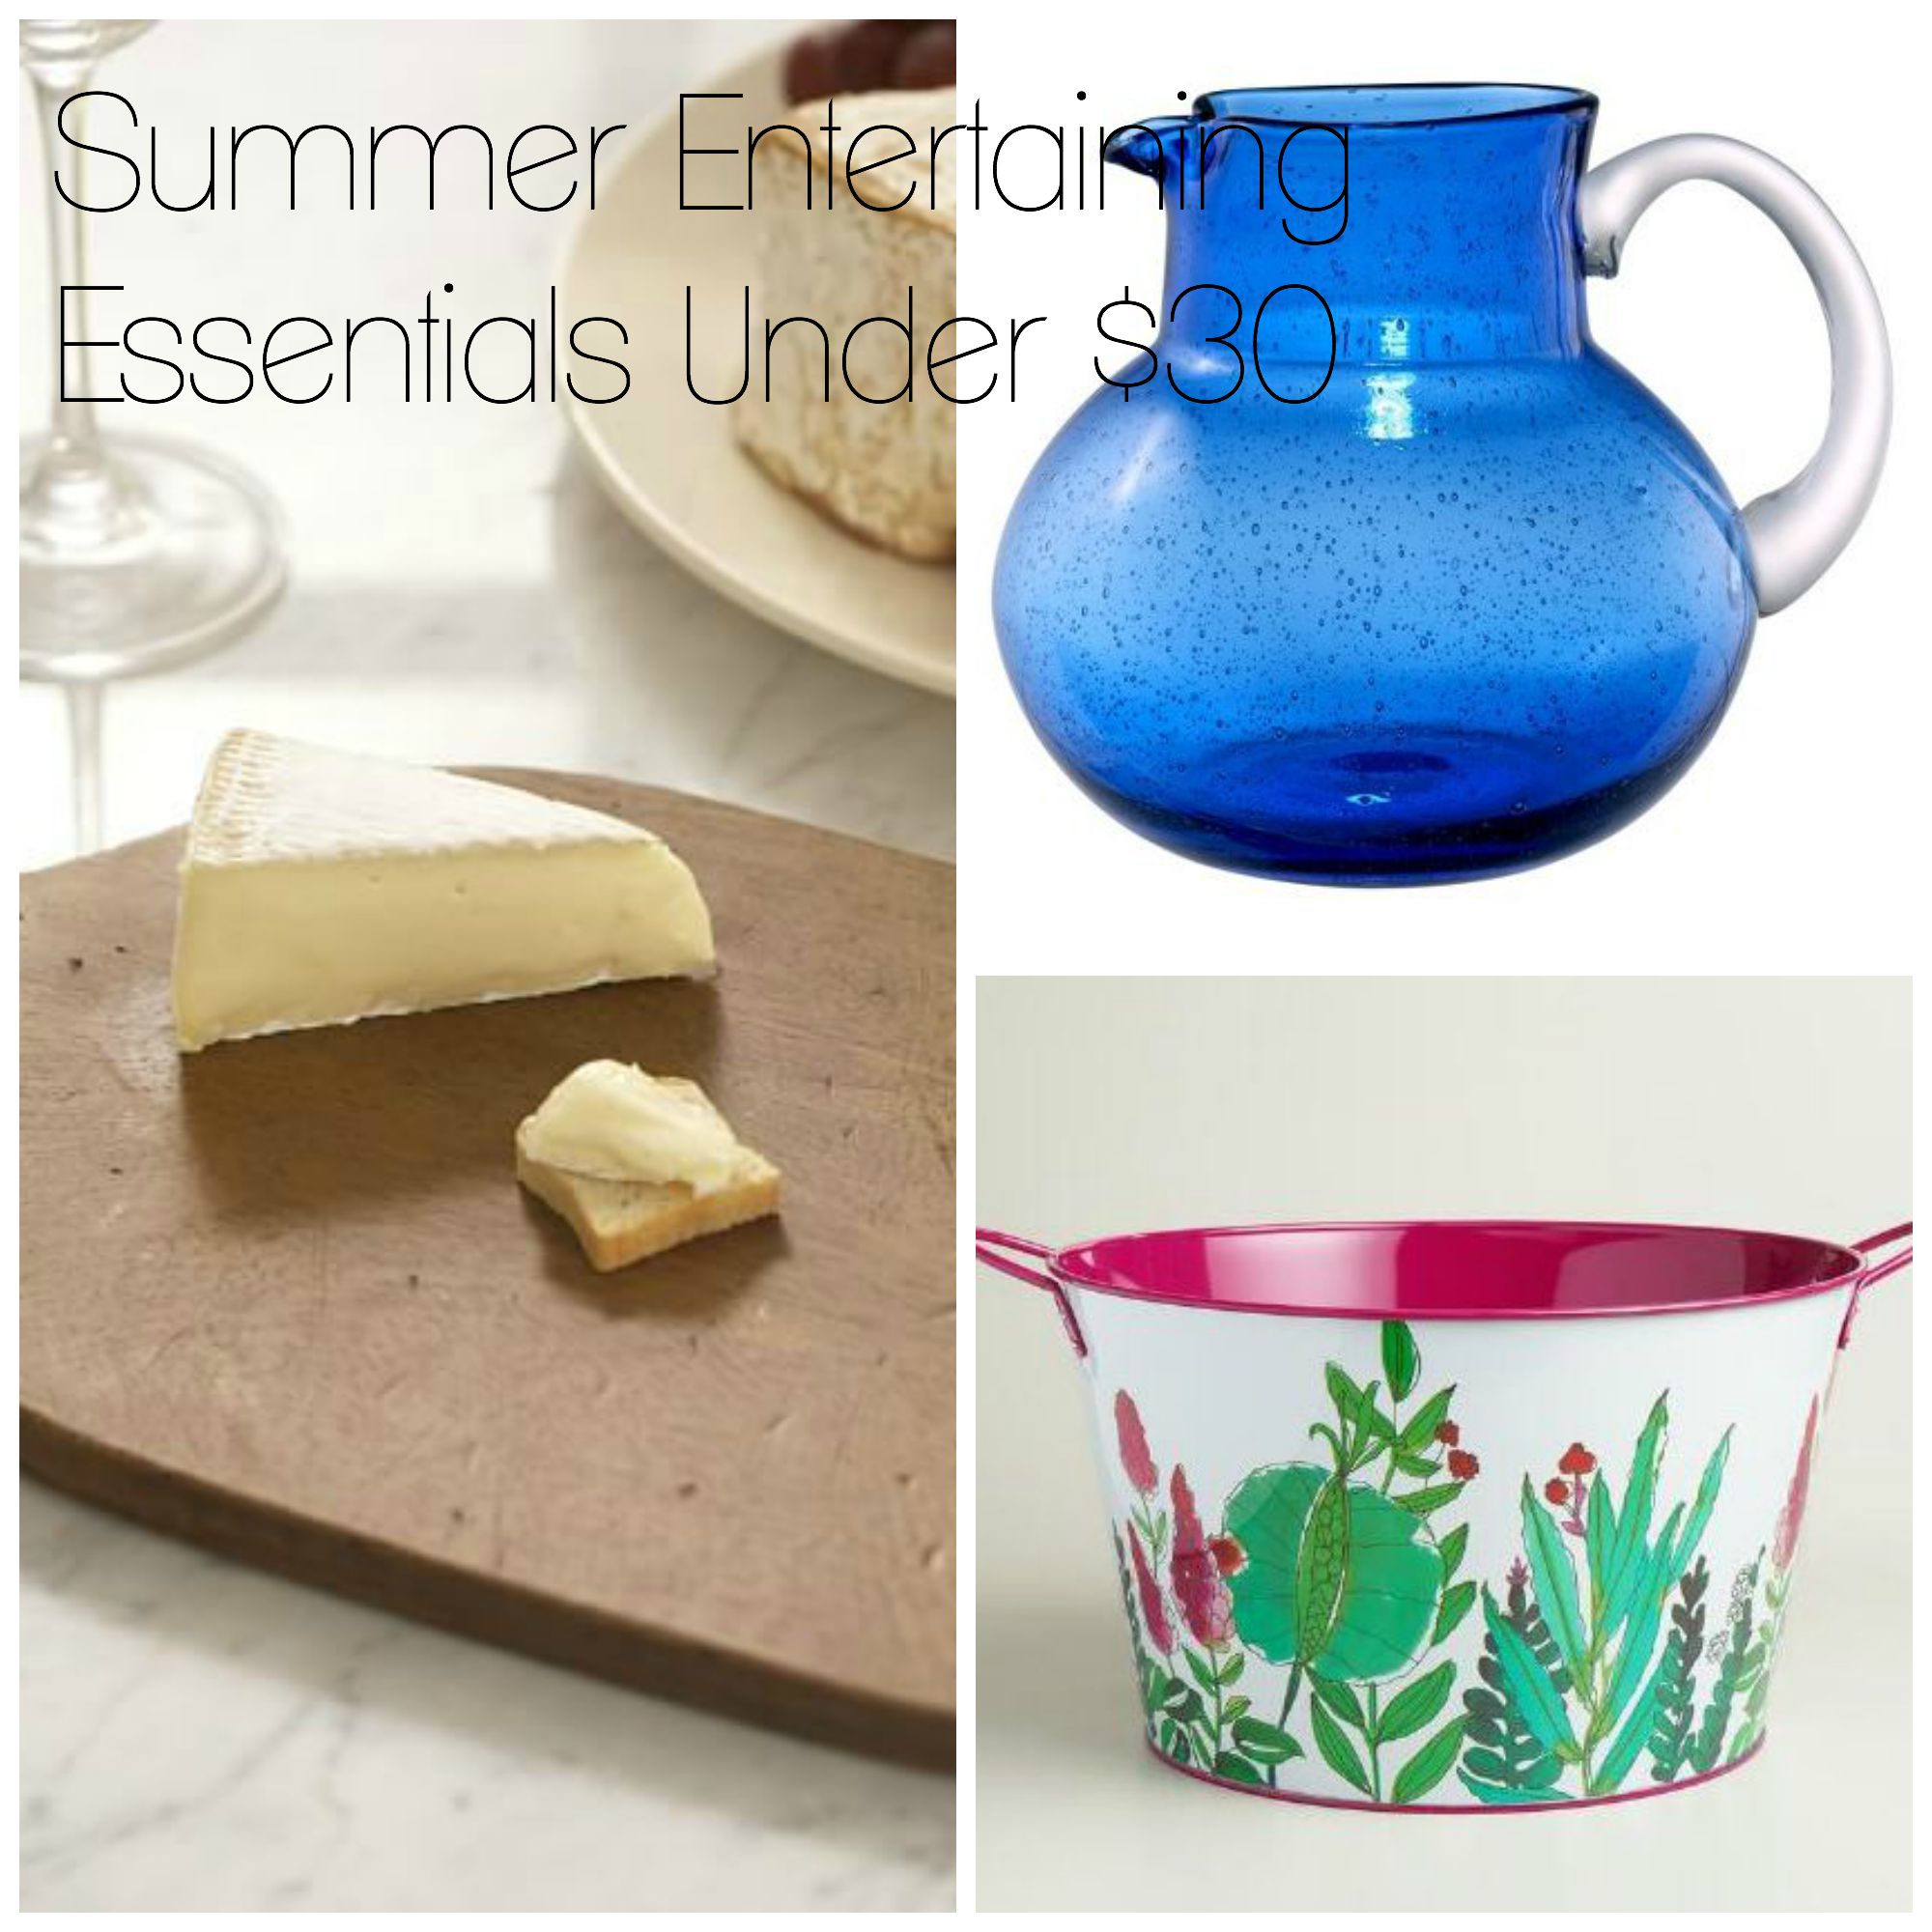 Summer entertaining essentials under $30